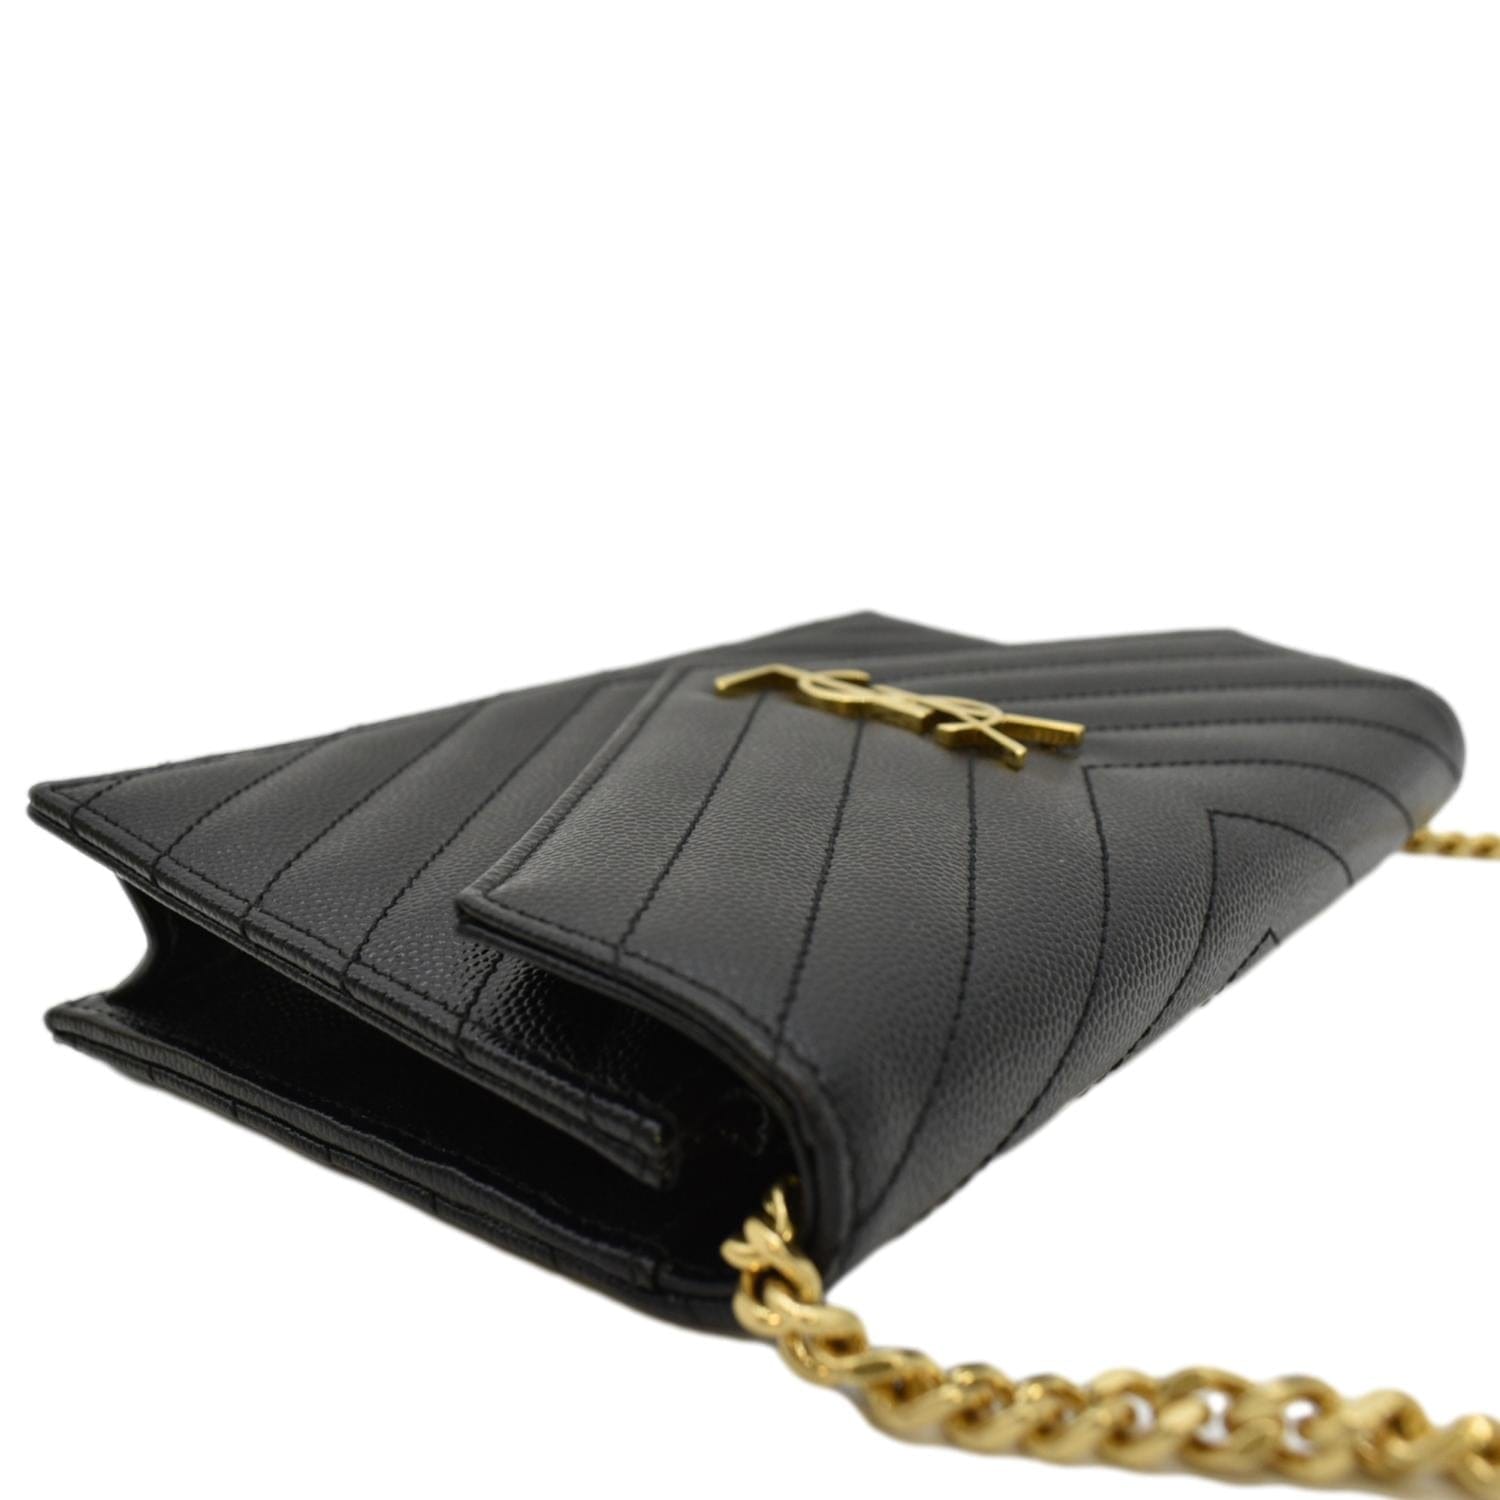 YVES SAINT LAURENT Cassandre Matelasse Chain Wallet Crossbody Bag Blac